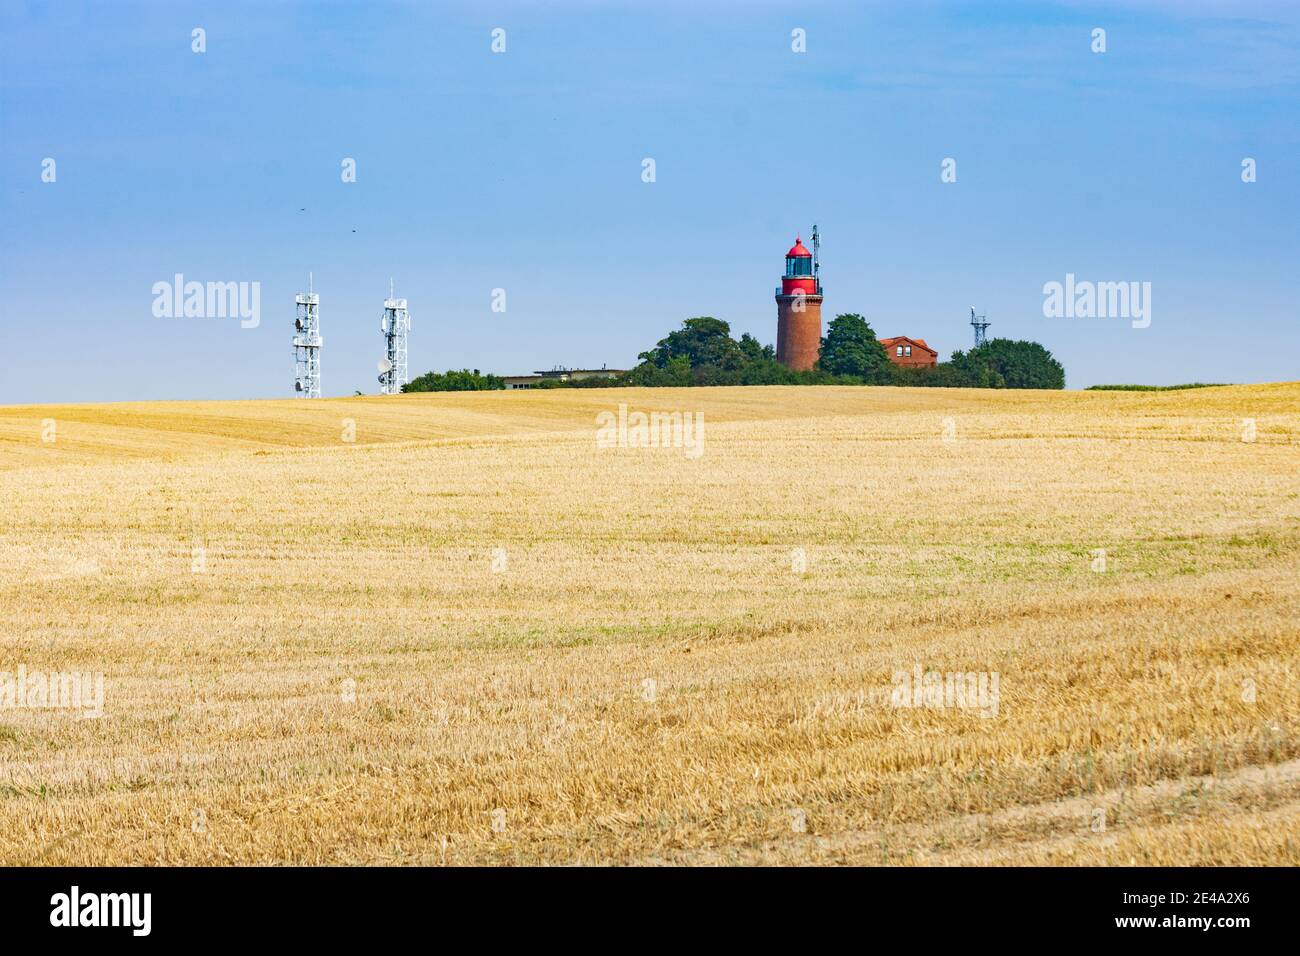 Bastorf, phare de Bastorf, Ostsee (Mer Baltique côte mecklembourgeoise), Mecklenburg-Vorpommern / Mecklenburg-Poméranie occidentale, Allemagne Banque D'Images